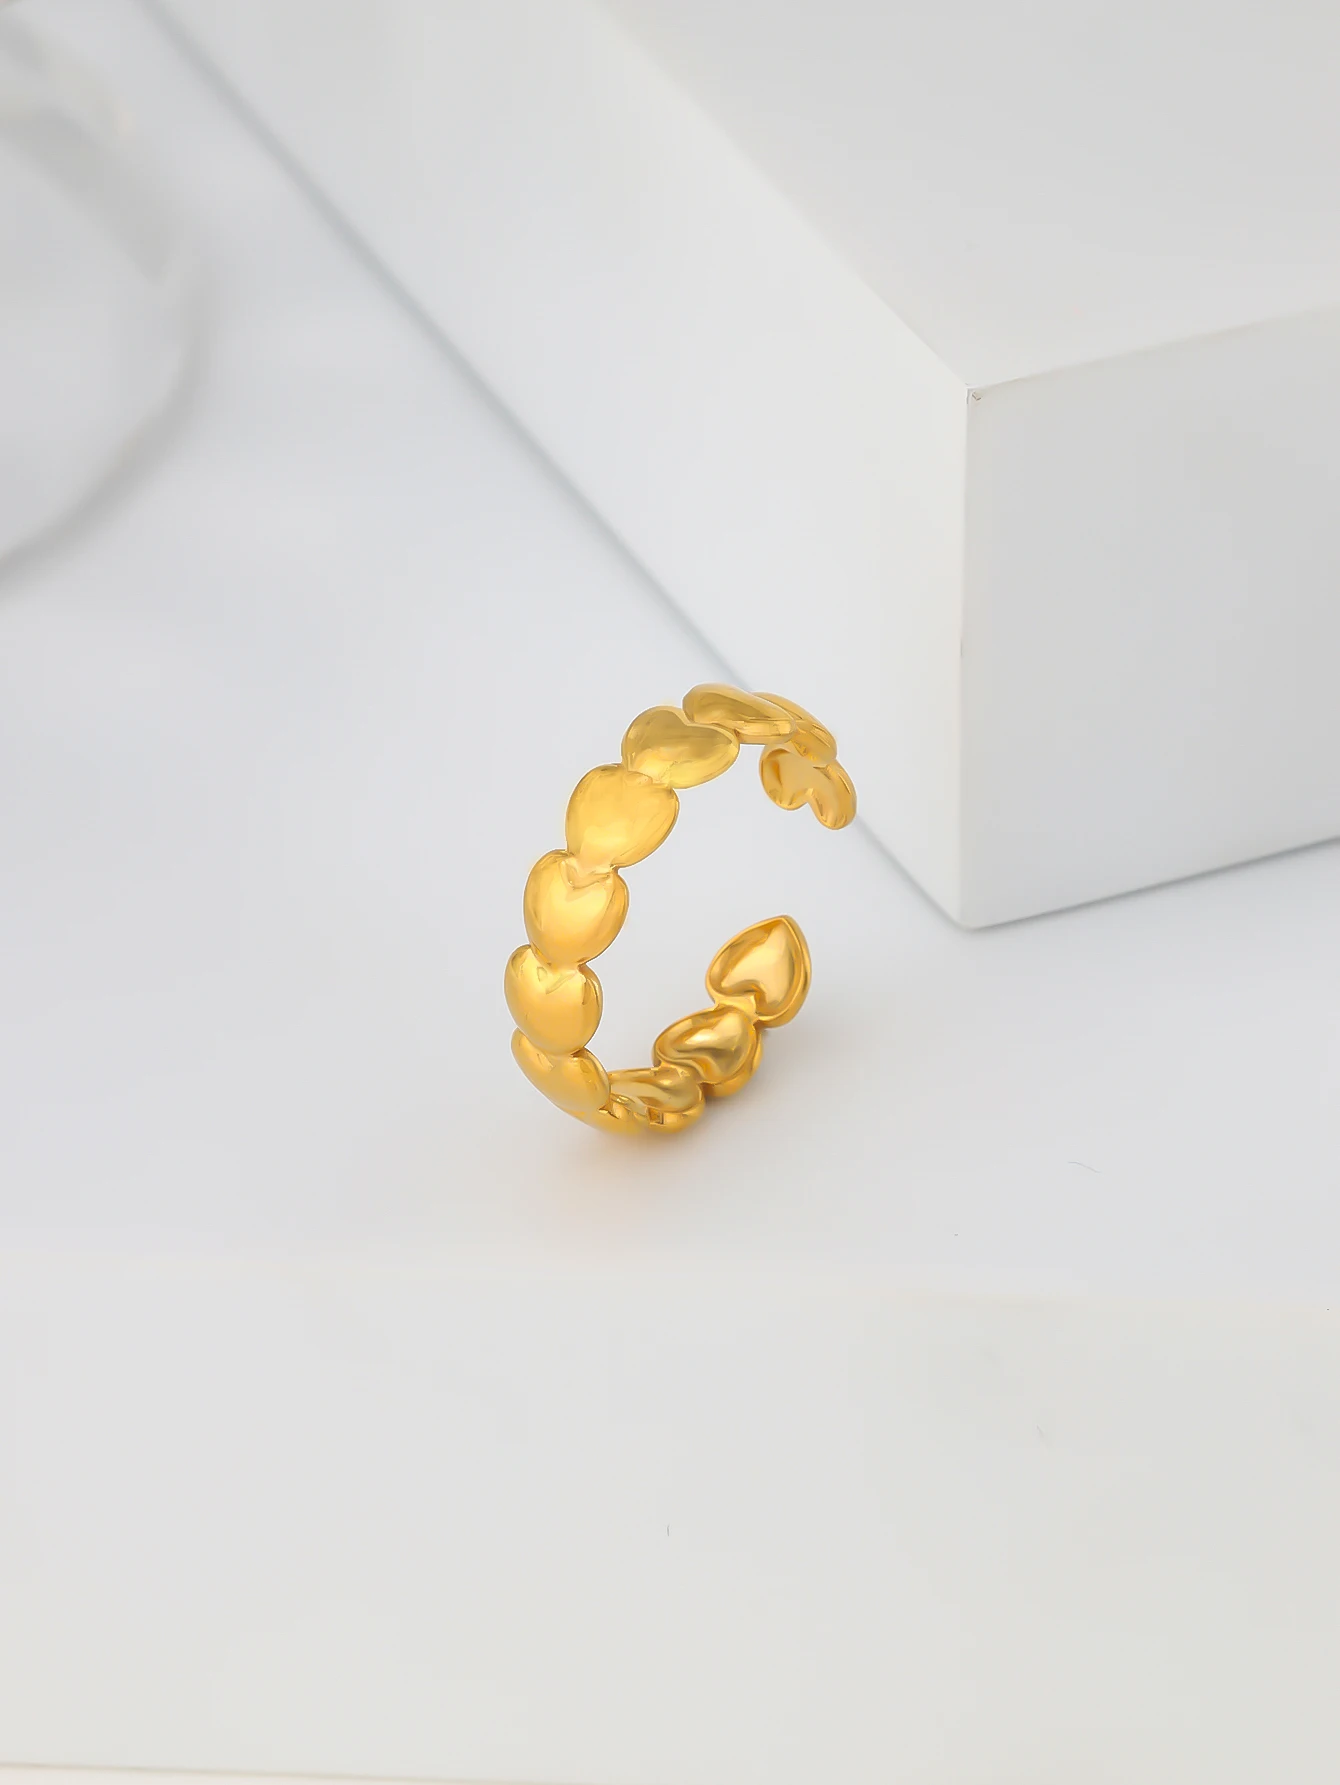 

Минималистичное кольцо в стиле INS, креативное дизайнерское нишевое минималистичное женское кольцо в форме сердца с медным покрытием, милое кольцо из настоящего 18-каратного золота